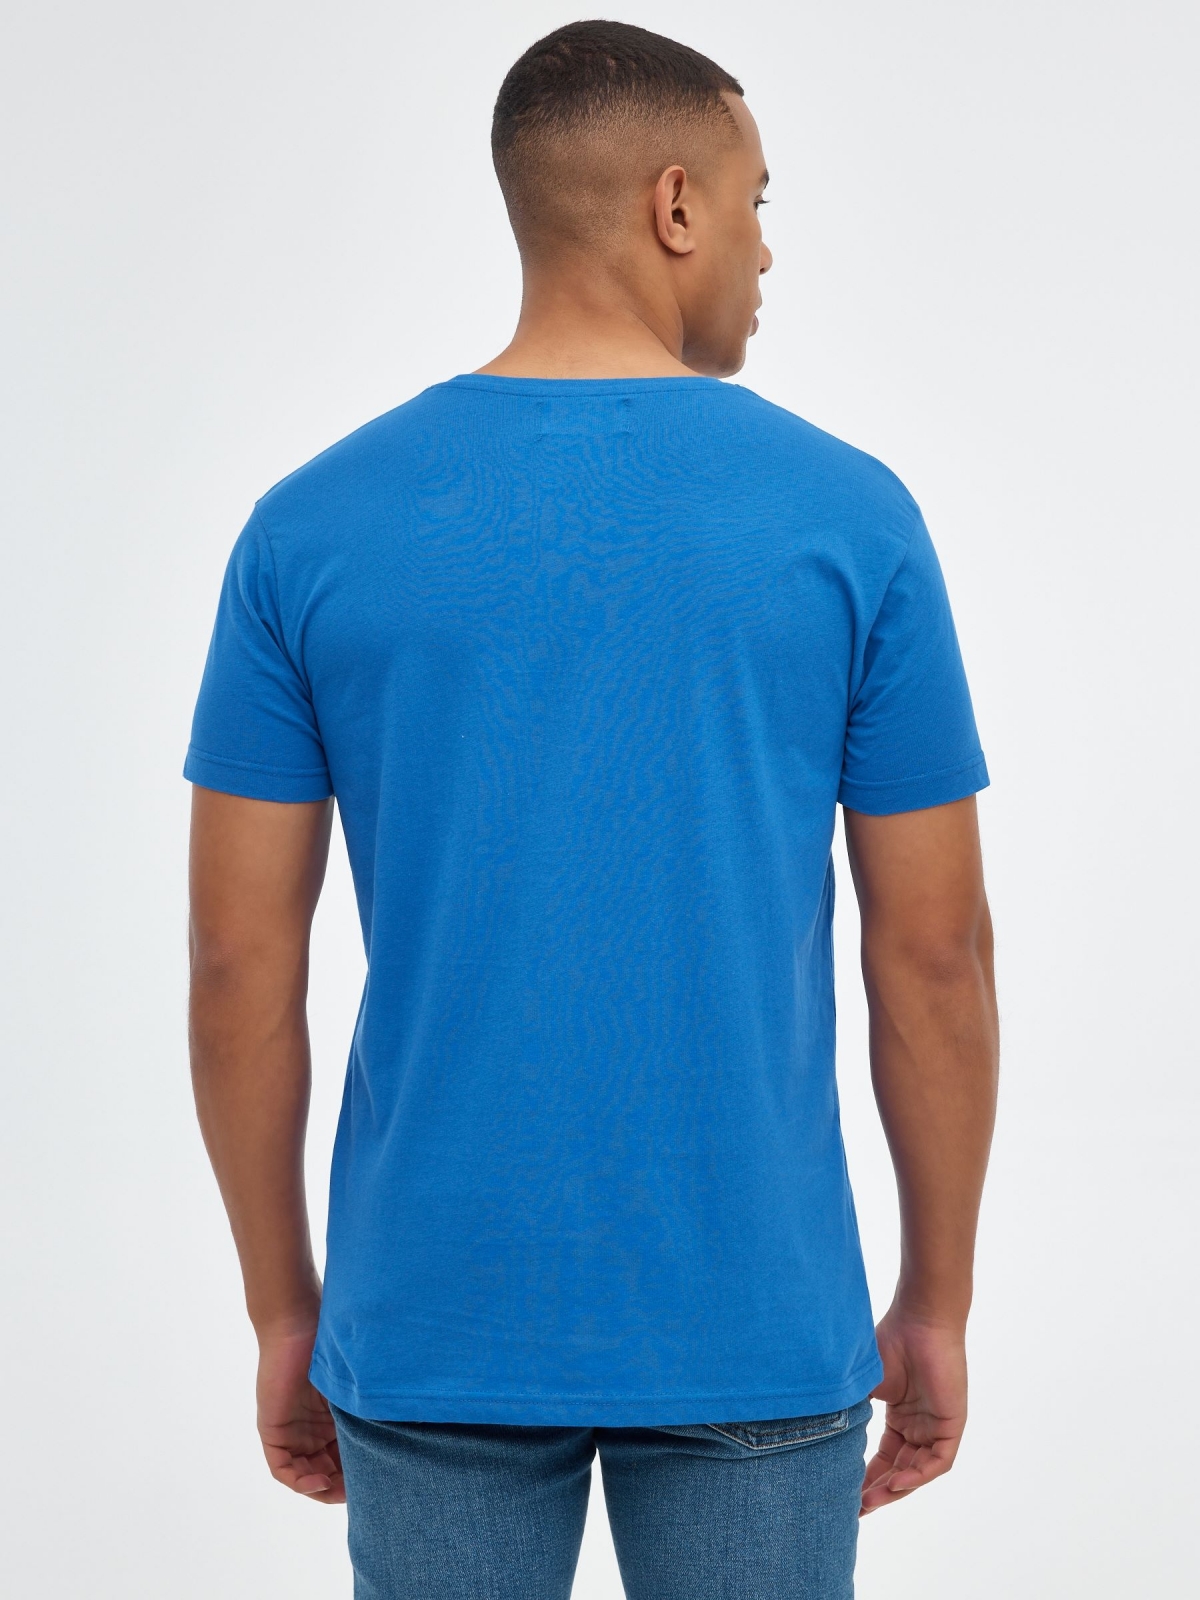 Camiseta básica "INSIDE" azul ducados vista media trasera